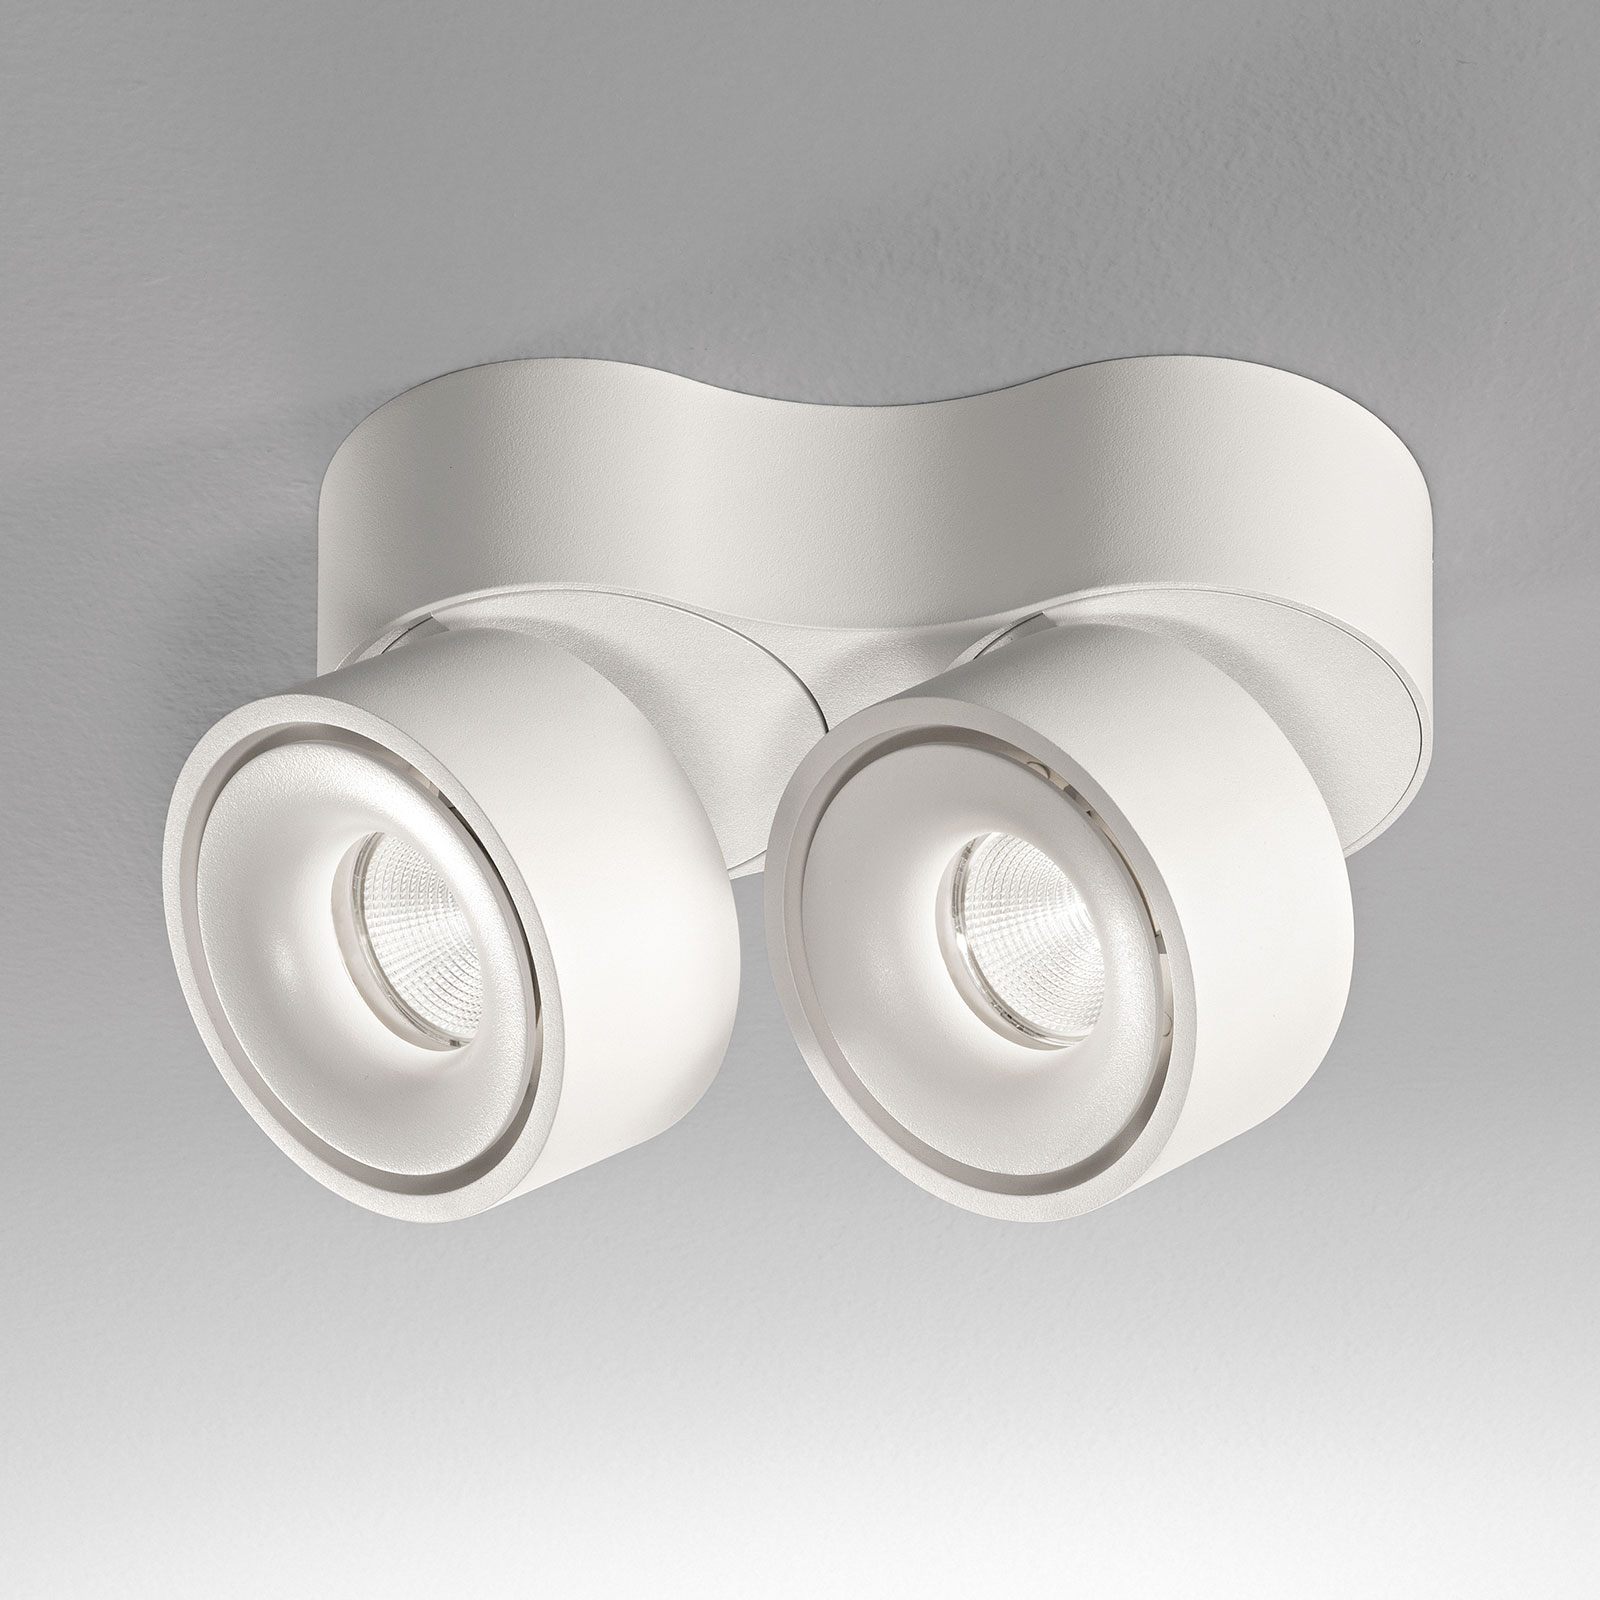 Egger Clippo Duo LED downlight, white, 3,000 K